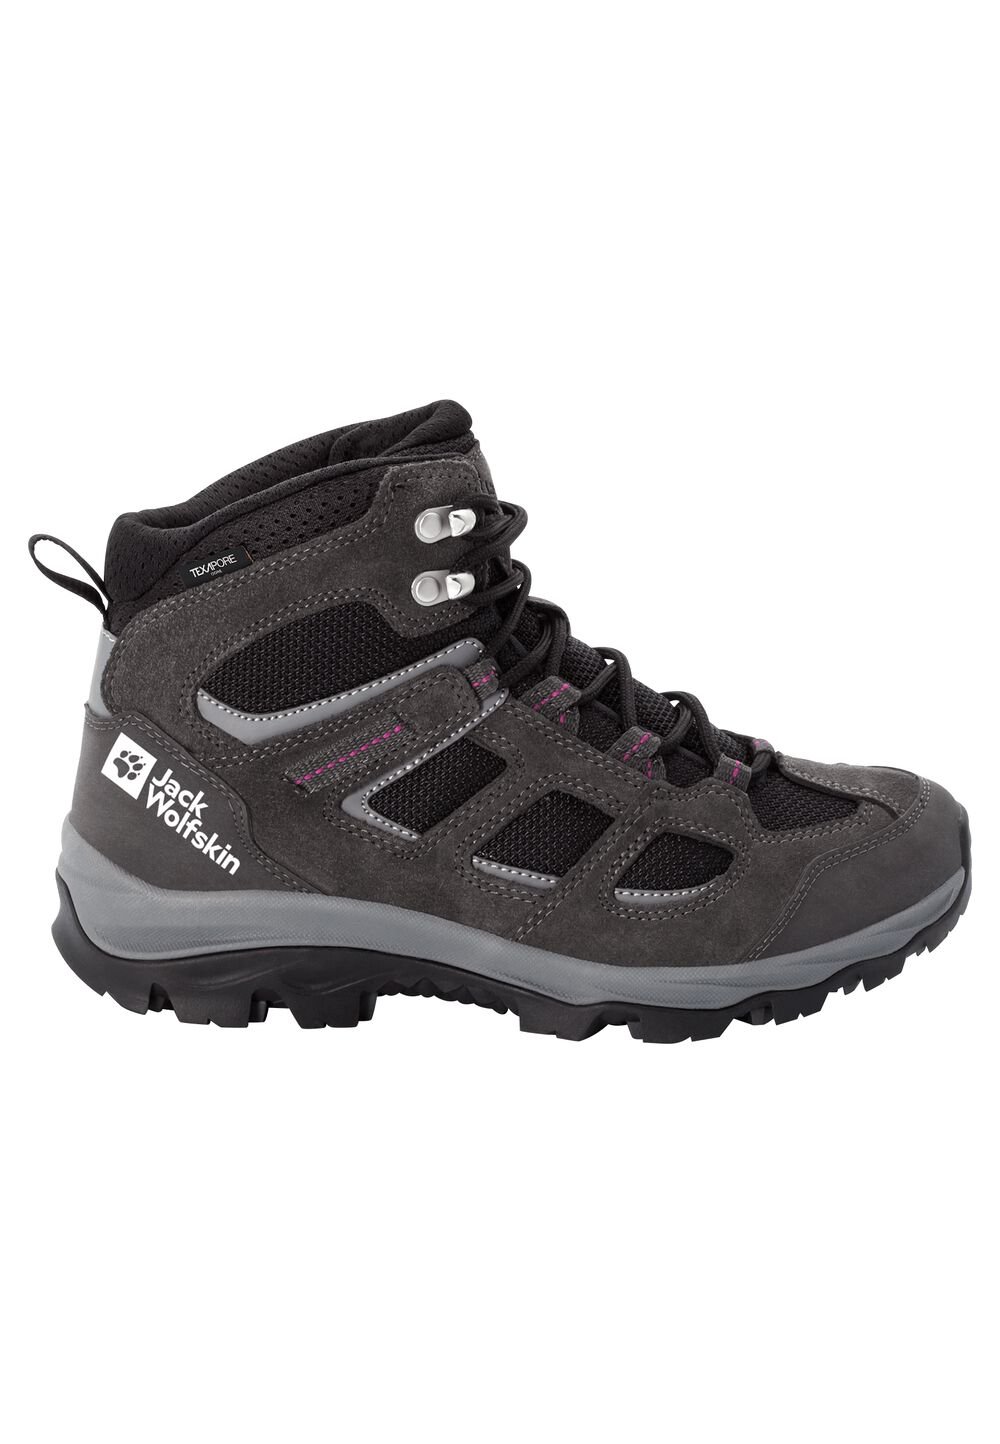 Chaussures de randonnée imperméables femmes Vojo 3 Texapore Mid Women 3,5 gris dark steel / purple